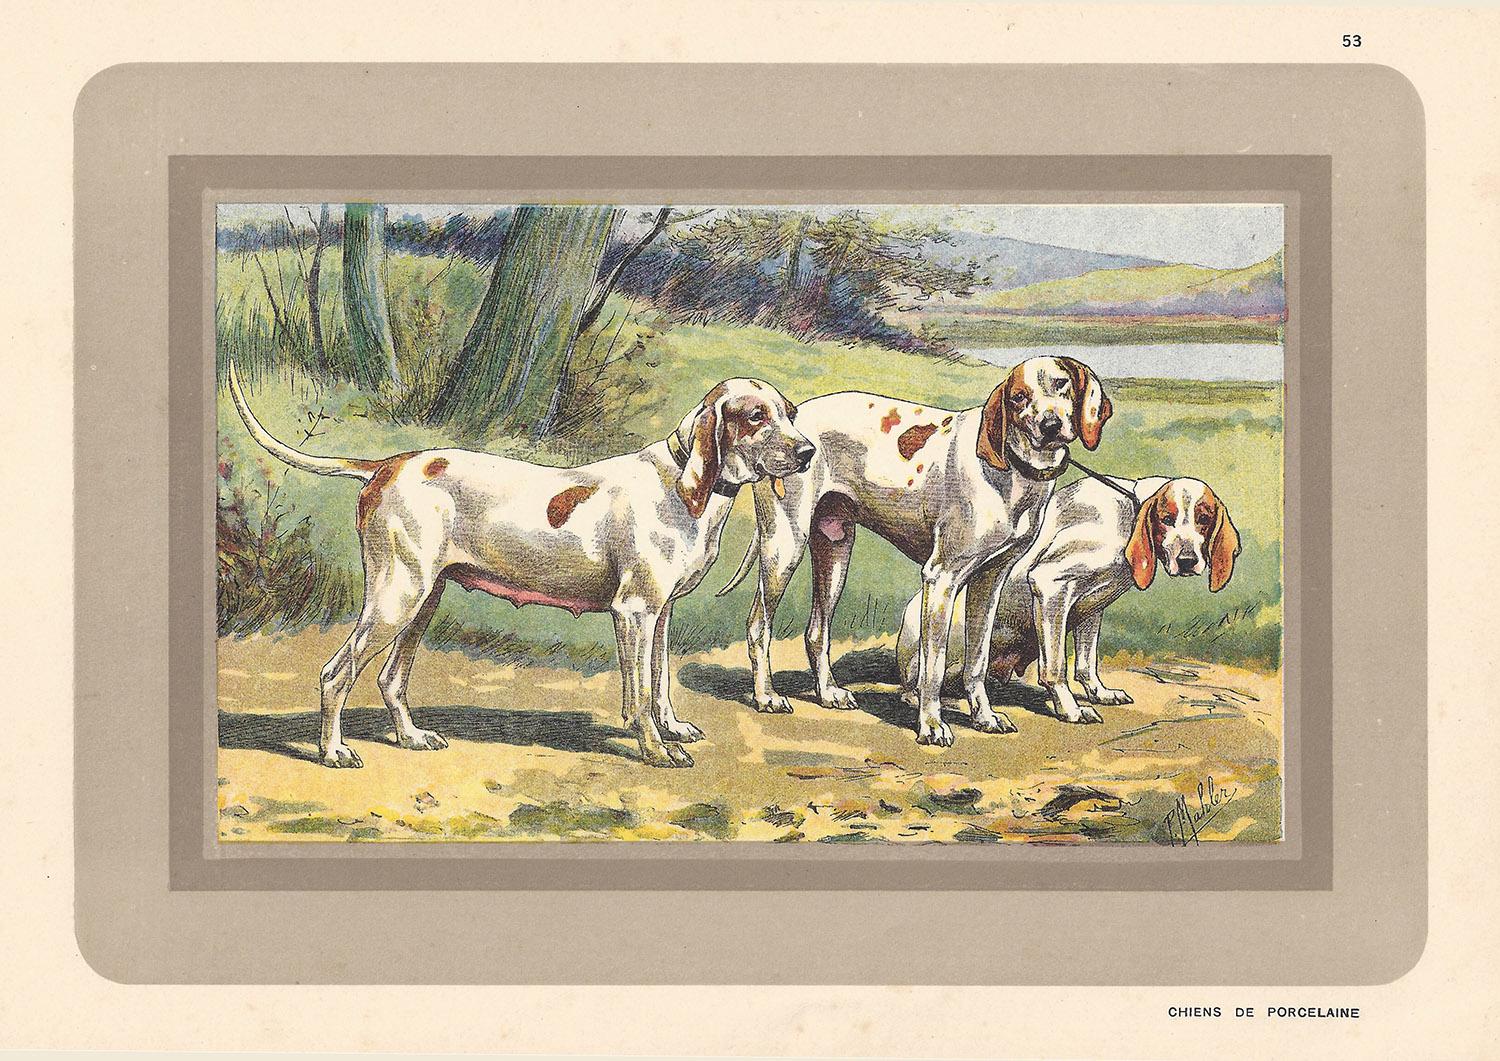 P. Mahler Animal Print – Chiens de Porcelaine, Franzsischer Hund, Chromolithographie mit Hund, 1930er Jahre